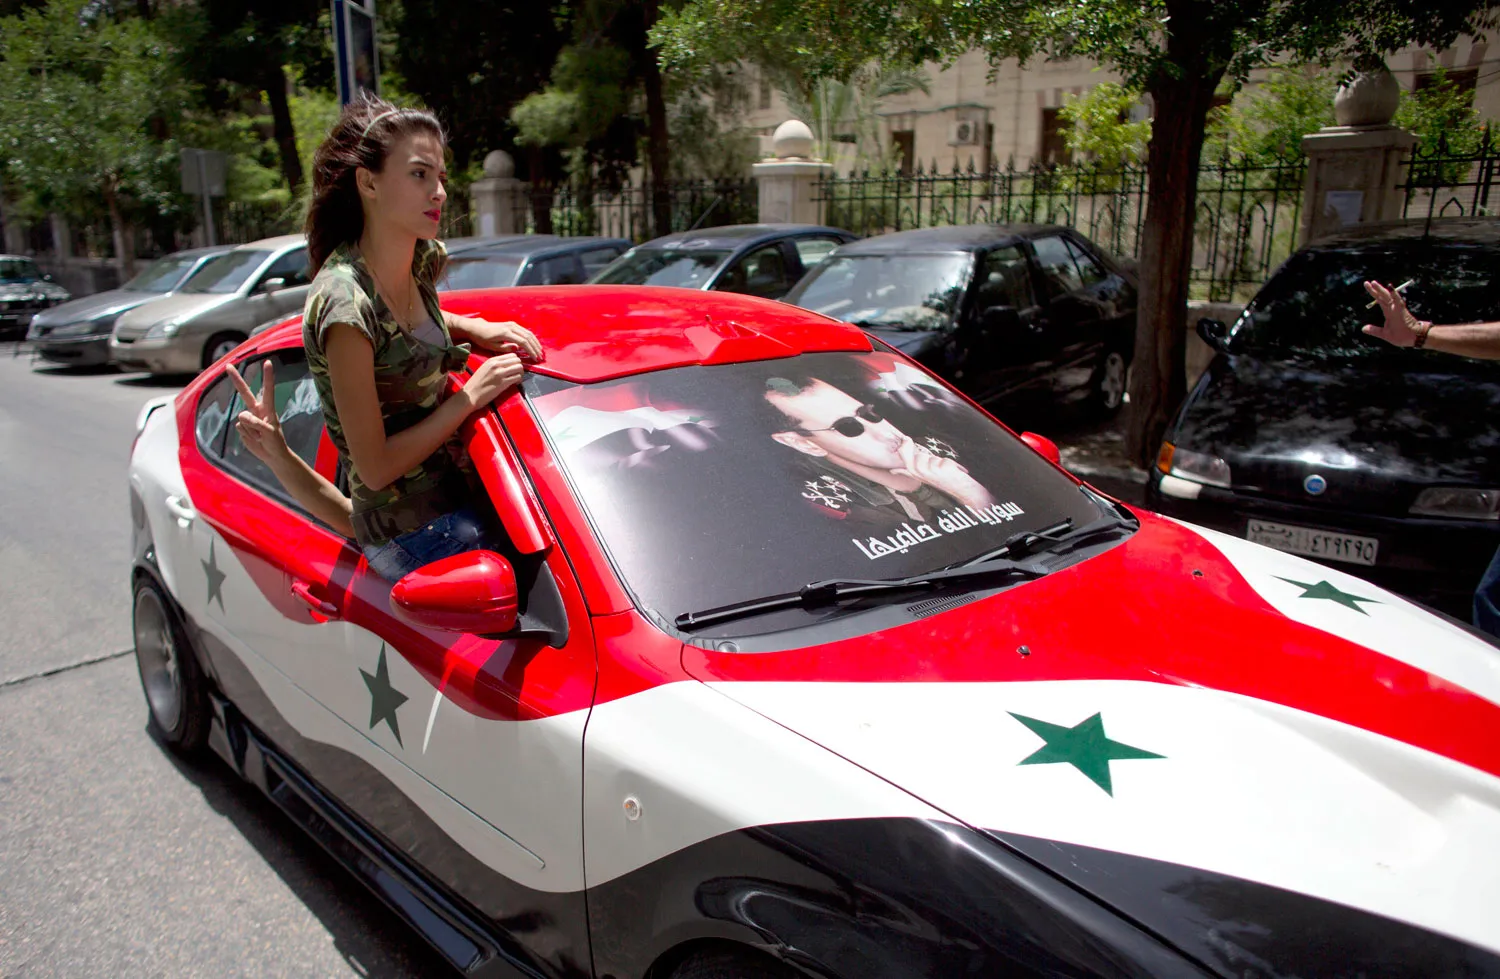 مطالباً المساواة بالظلم .. مسؤول بجامعة دمشق يدعو لسحب السيارات من المسؤولين